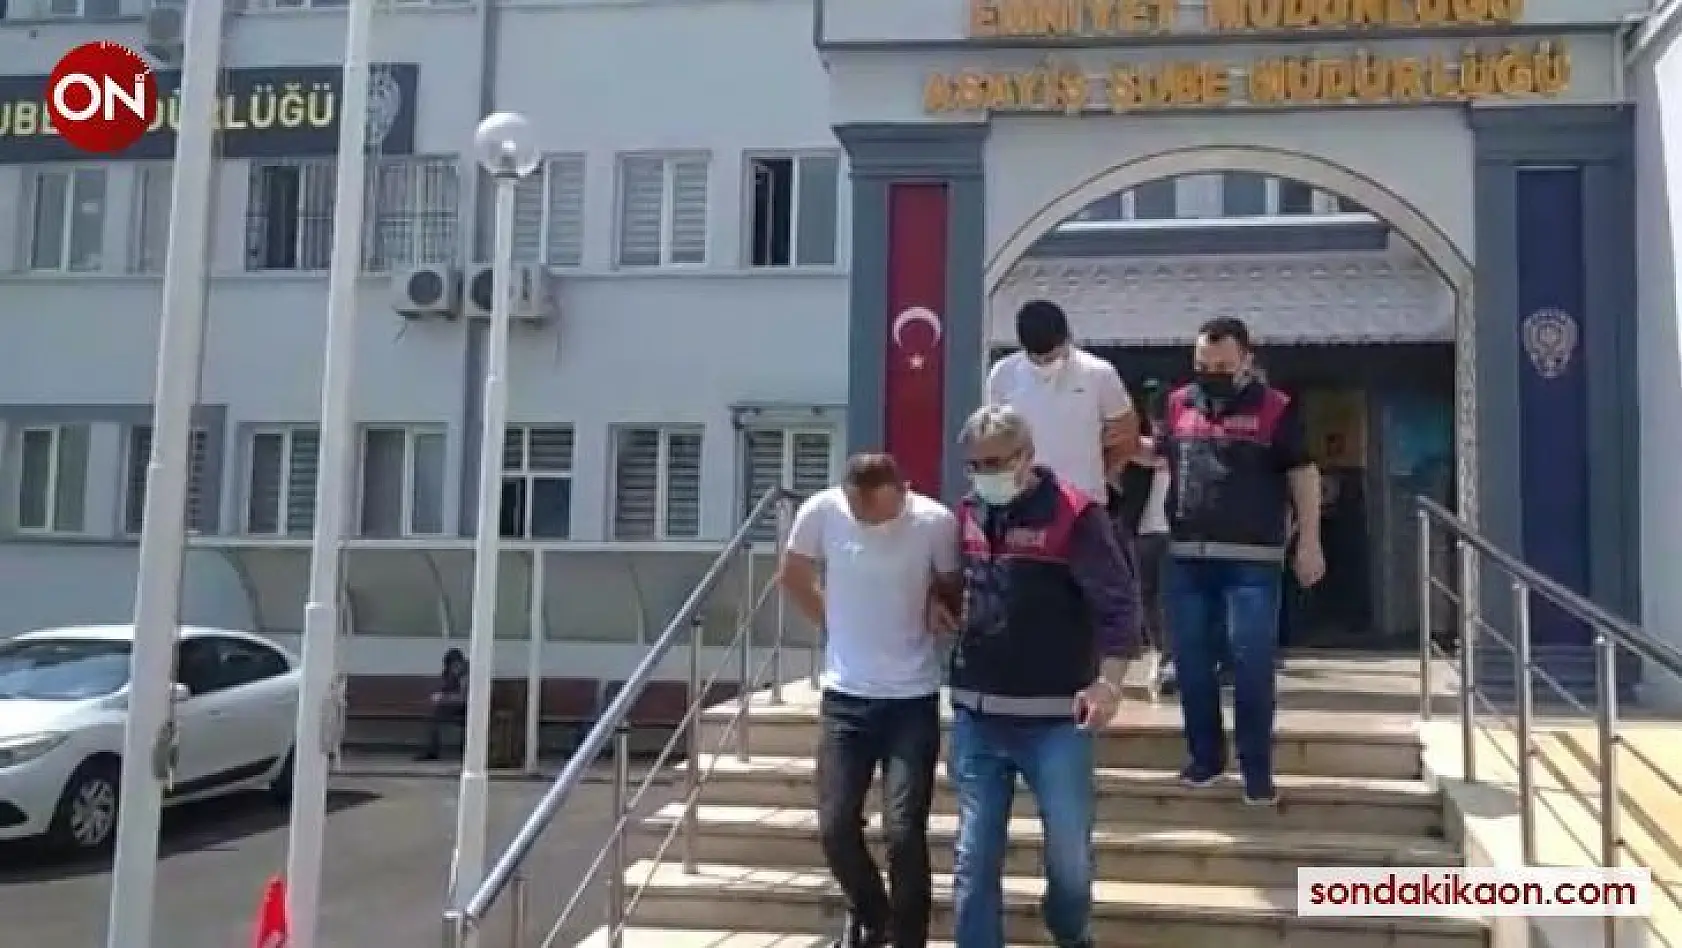 Bursa polisi 350 bin liralık hırsızlık yapan 5 kişiyi yakaladı